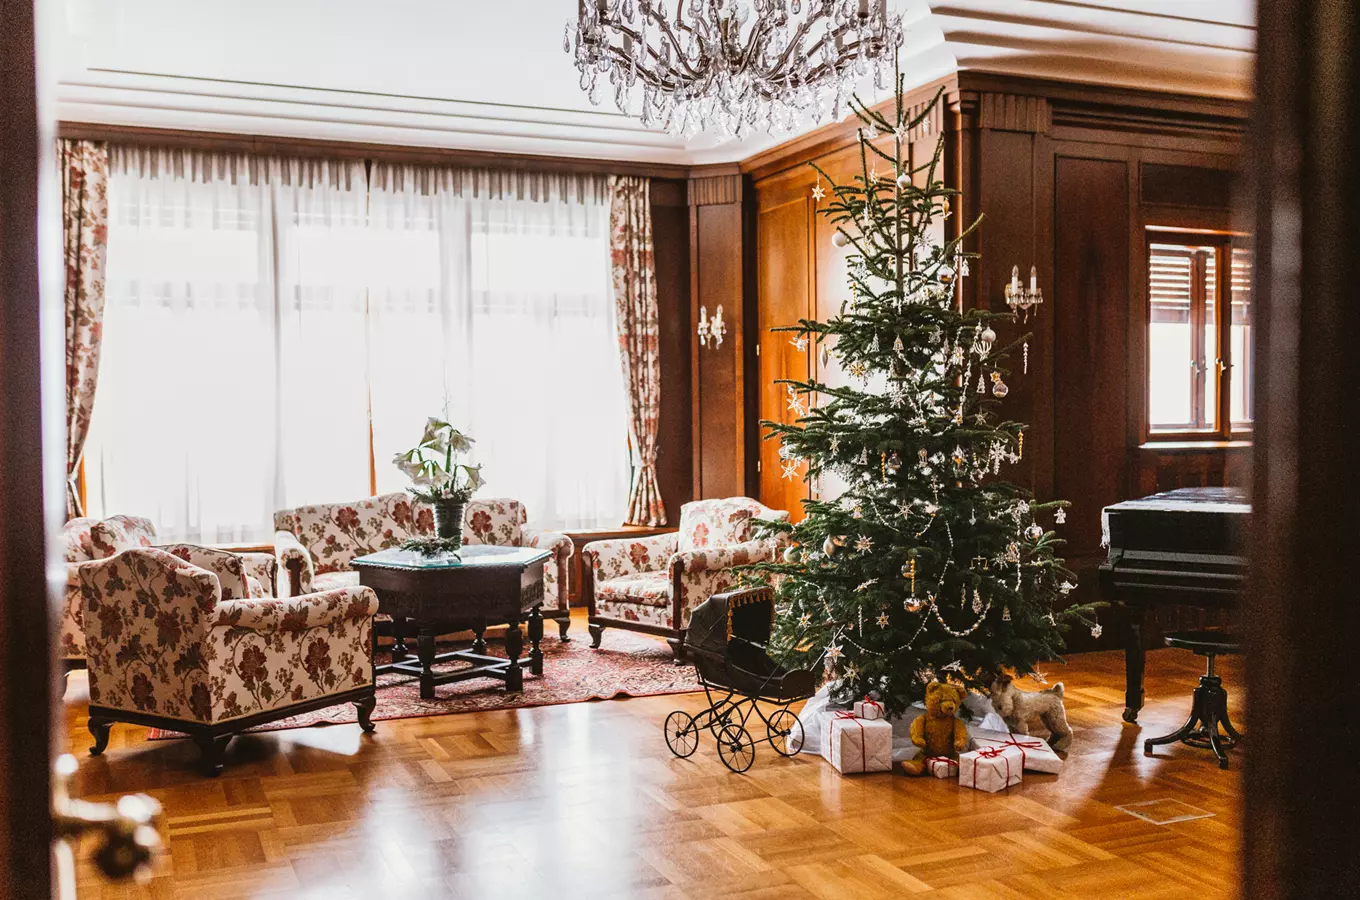 Svátky ve vile Stiassni – Ve světle chanukie i vánočního stromku